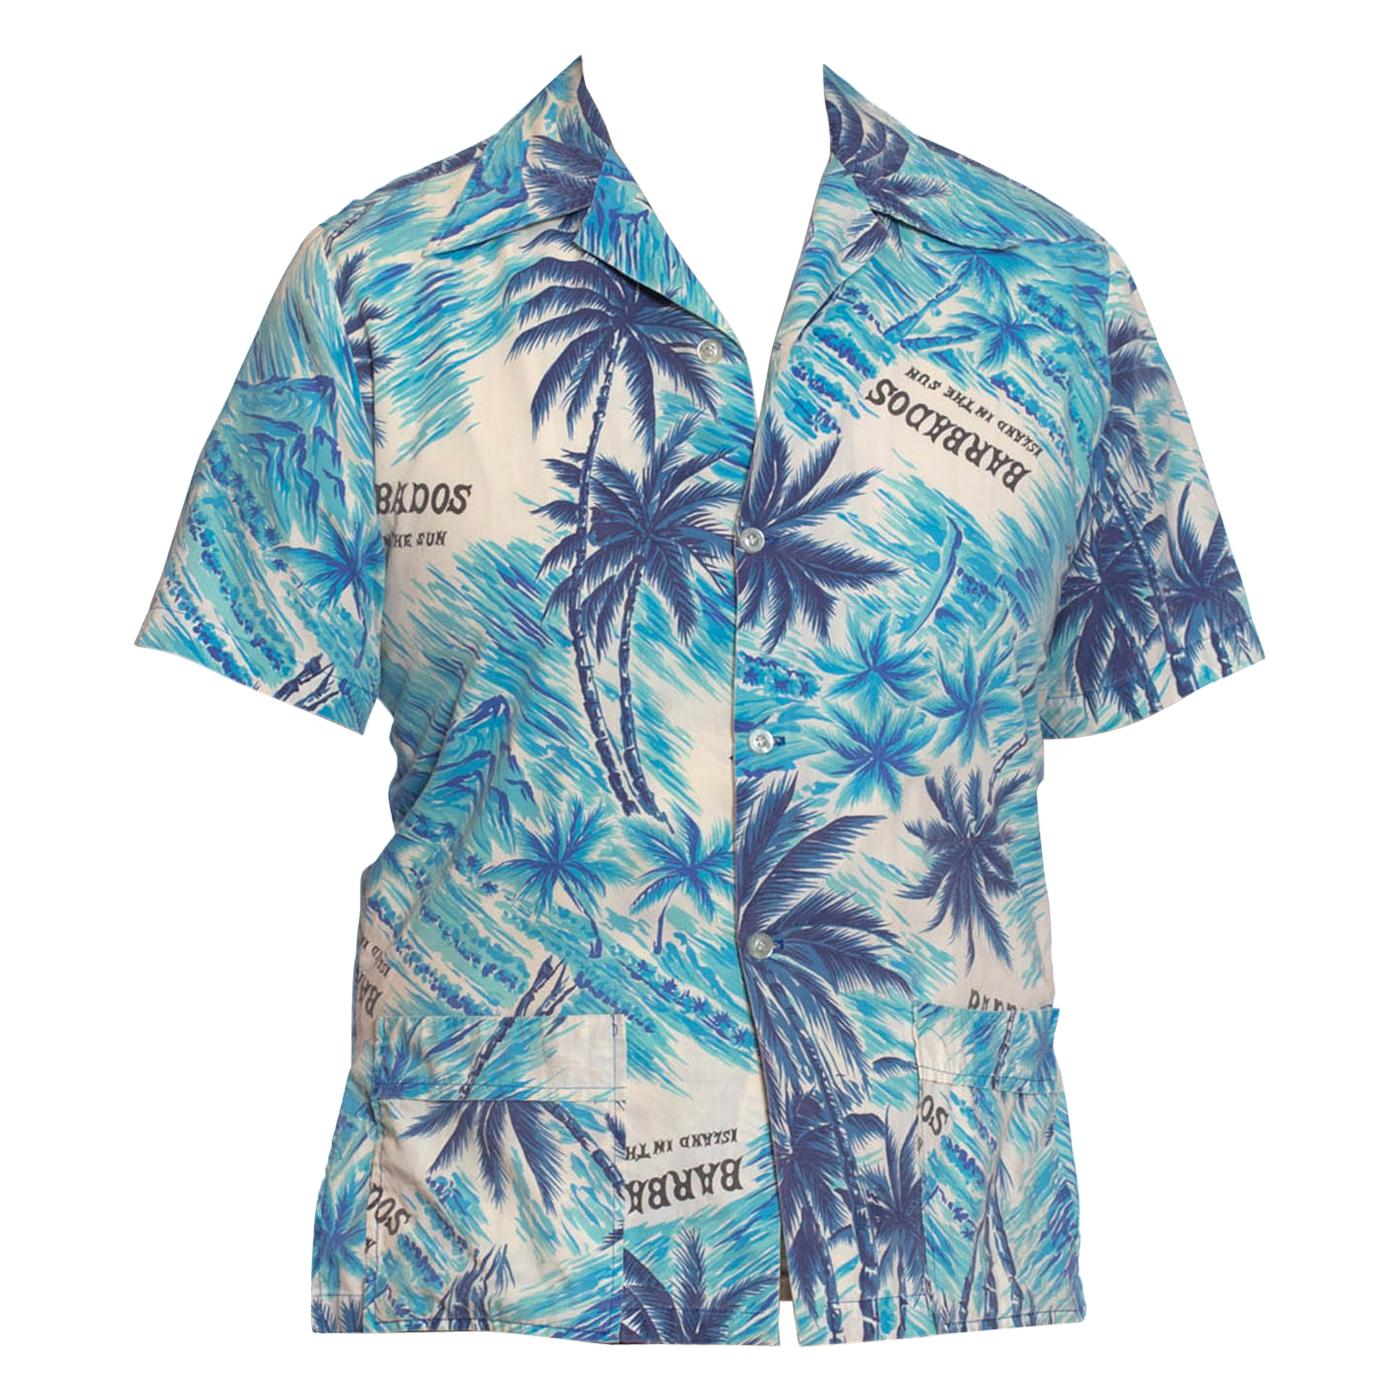 Blaues Barbados-Herrenhemd aus Baumwolle, 1960er Jahre, tropische Szene, Hawaii im Angebot